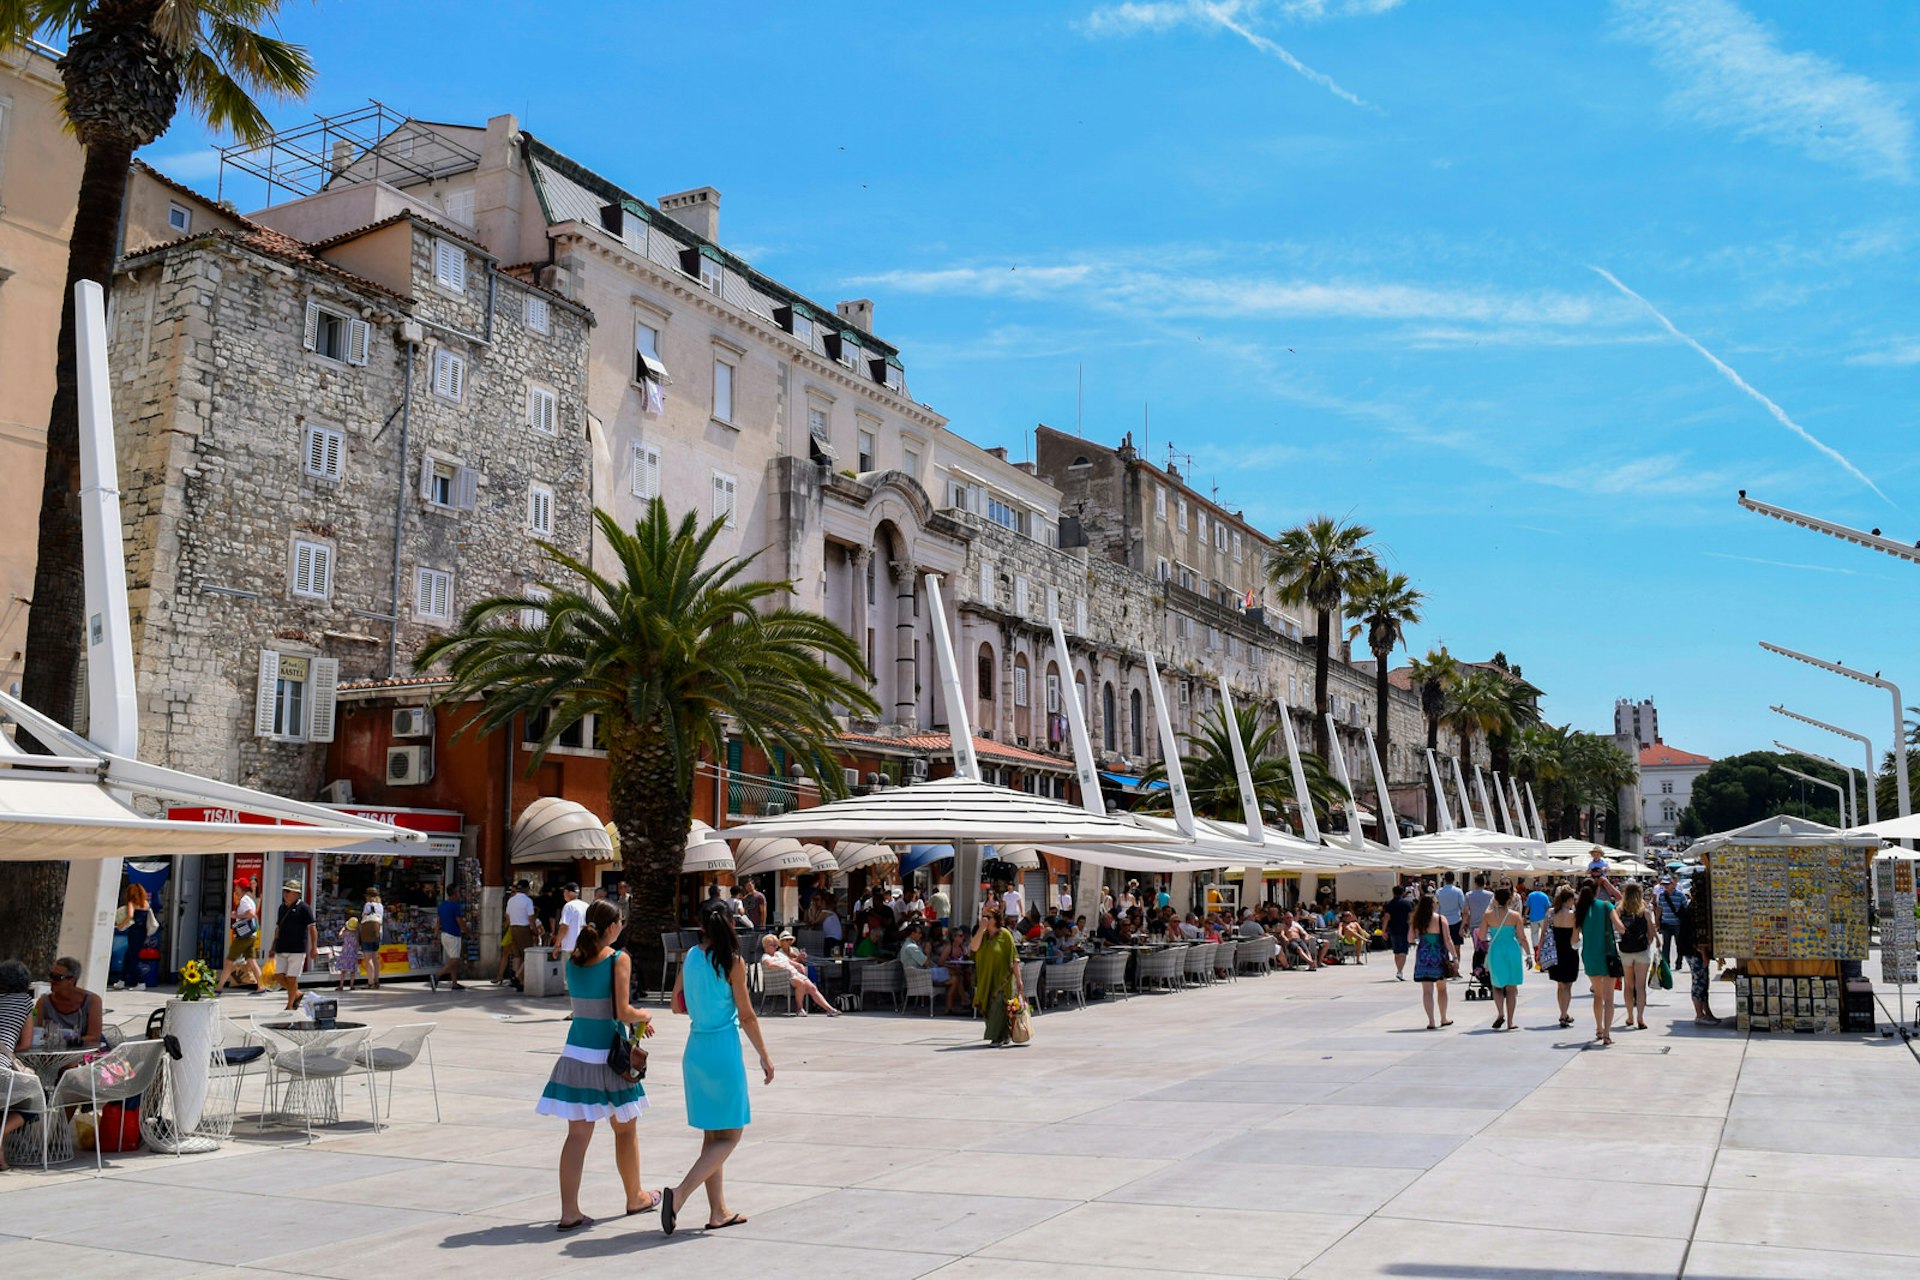 Cafes on Split's Riva promenade © Travelsewhere / Shutterstock